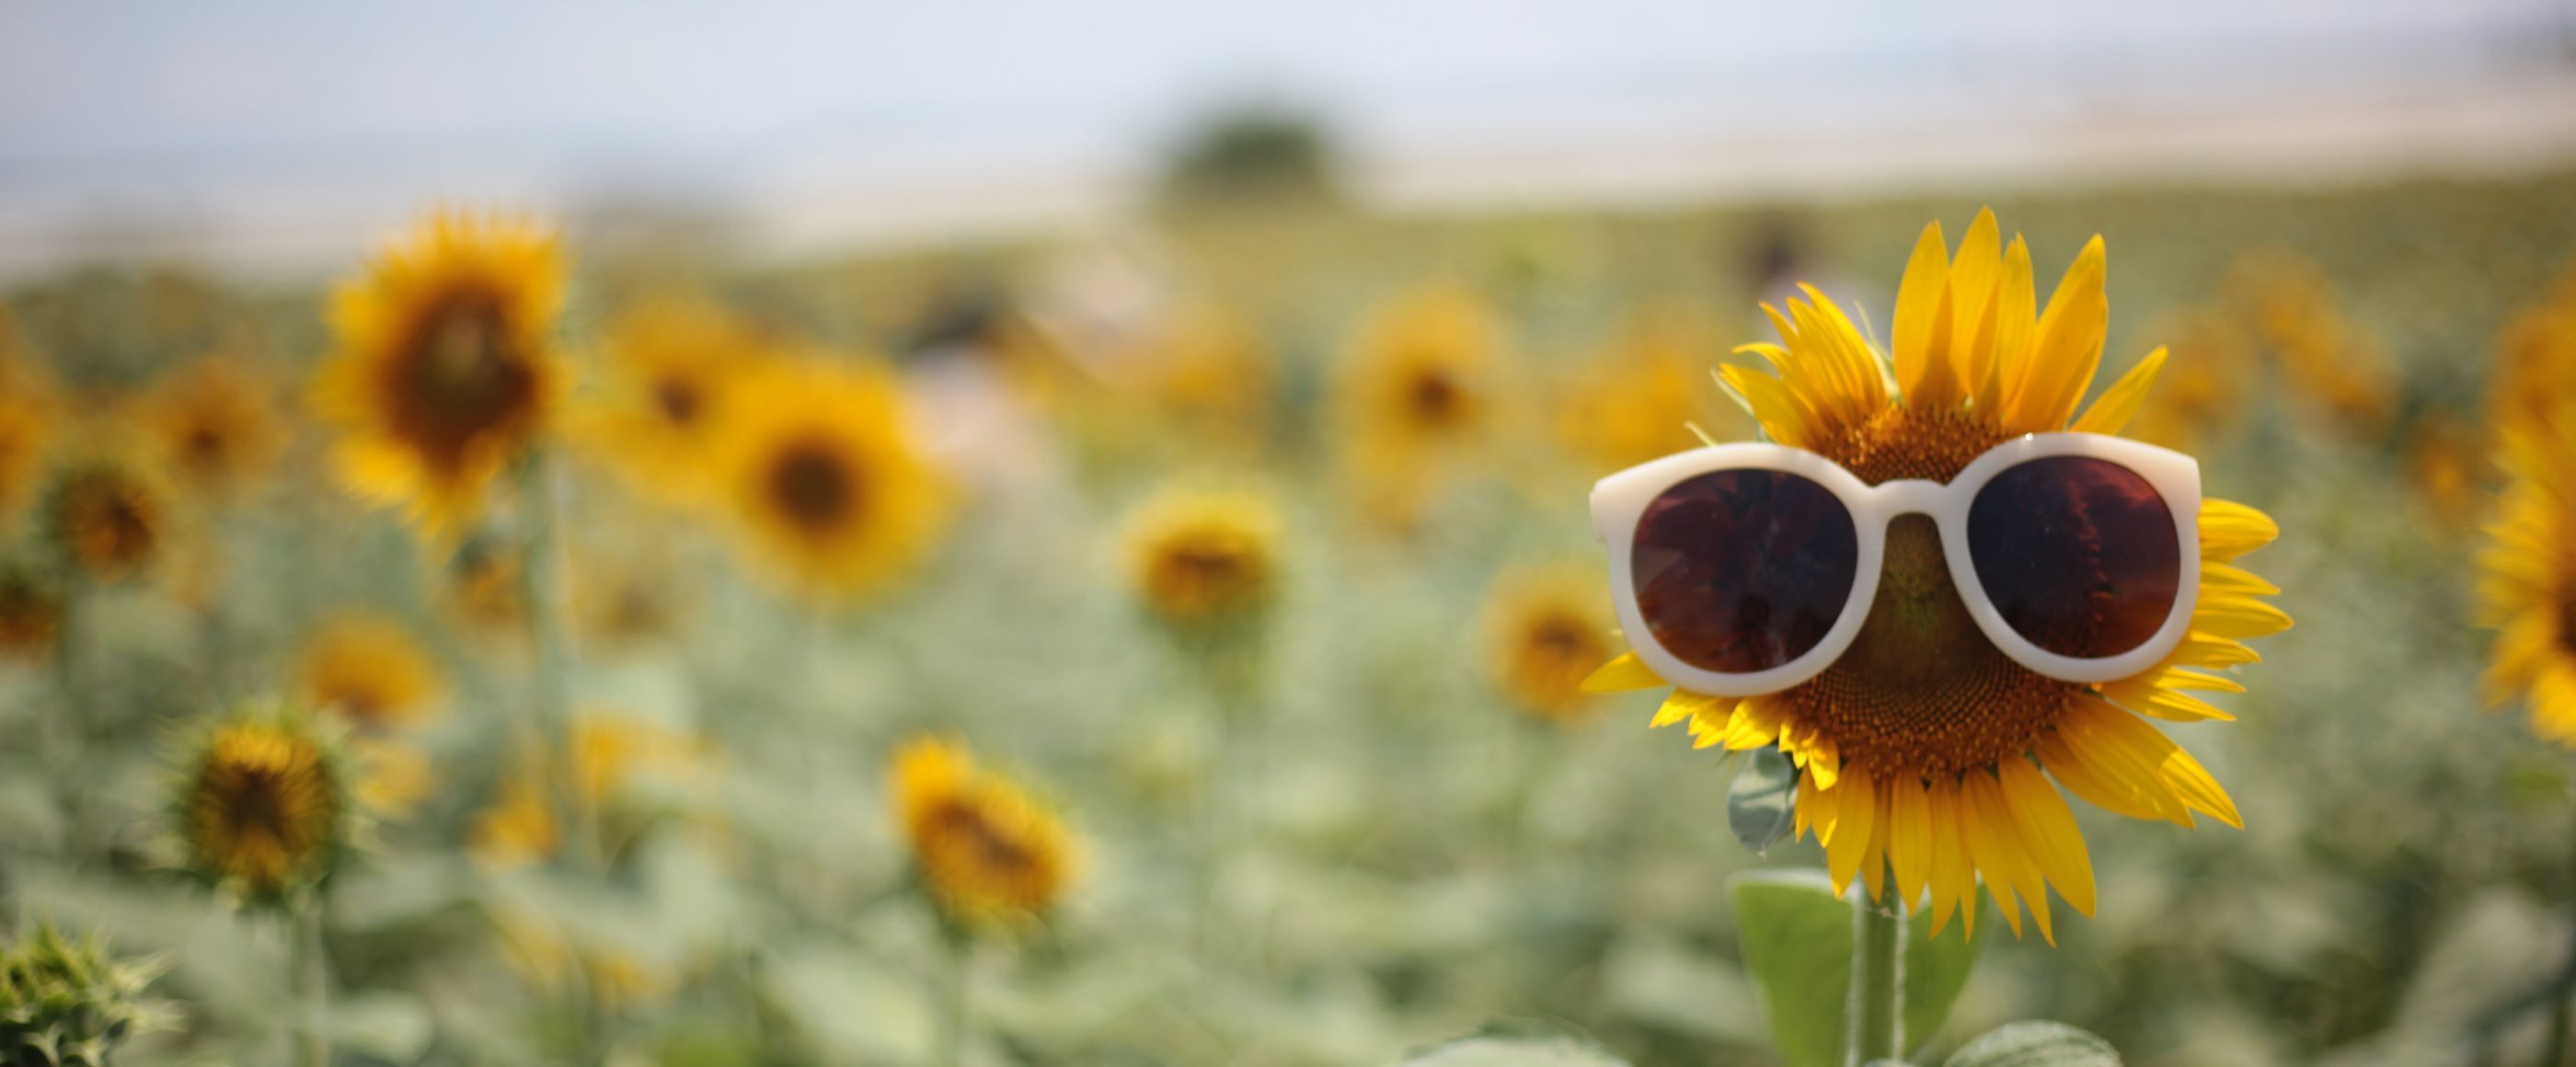 ein Feld mit Sonnenblumen. Auf einer Sonnenblume sitzt eine Sonnenbrille